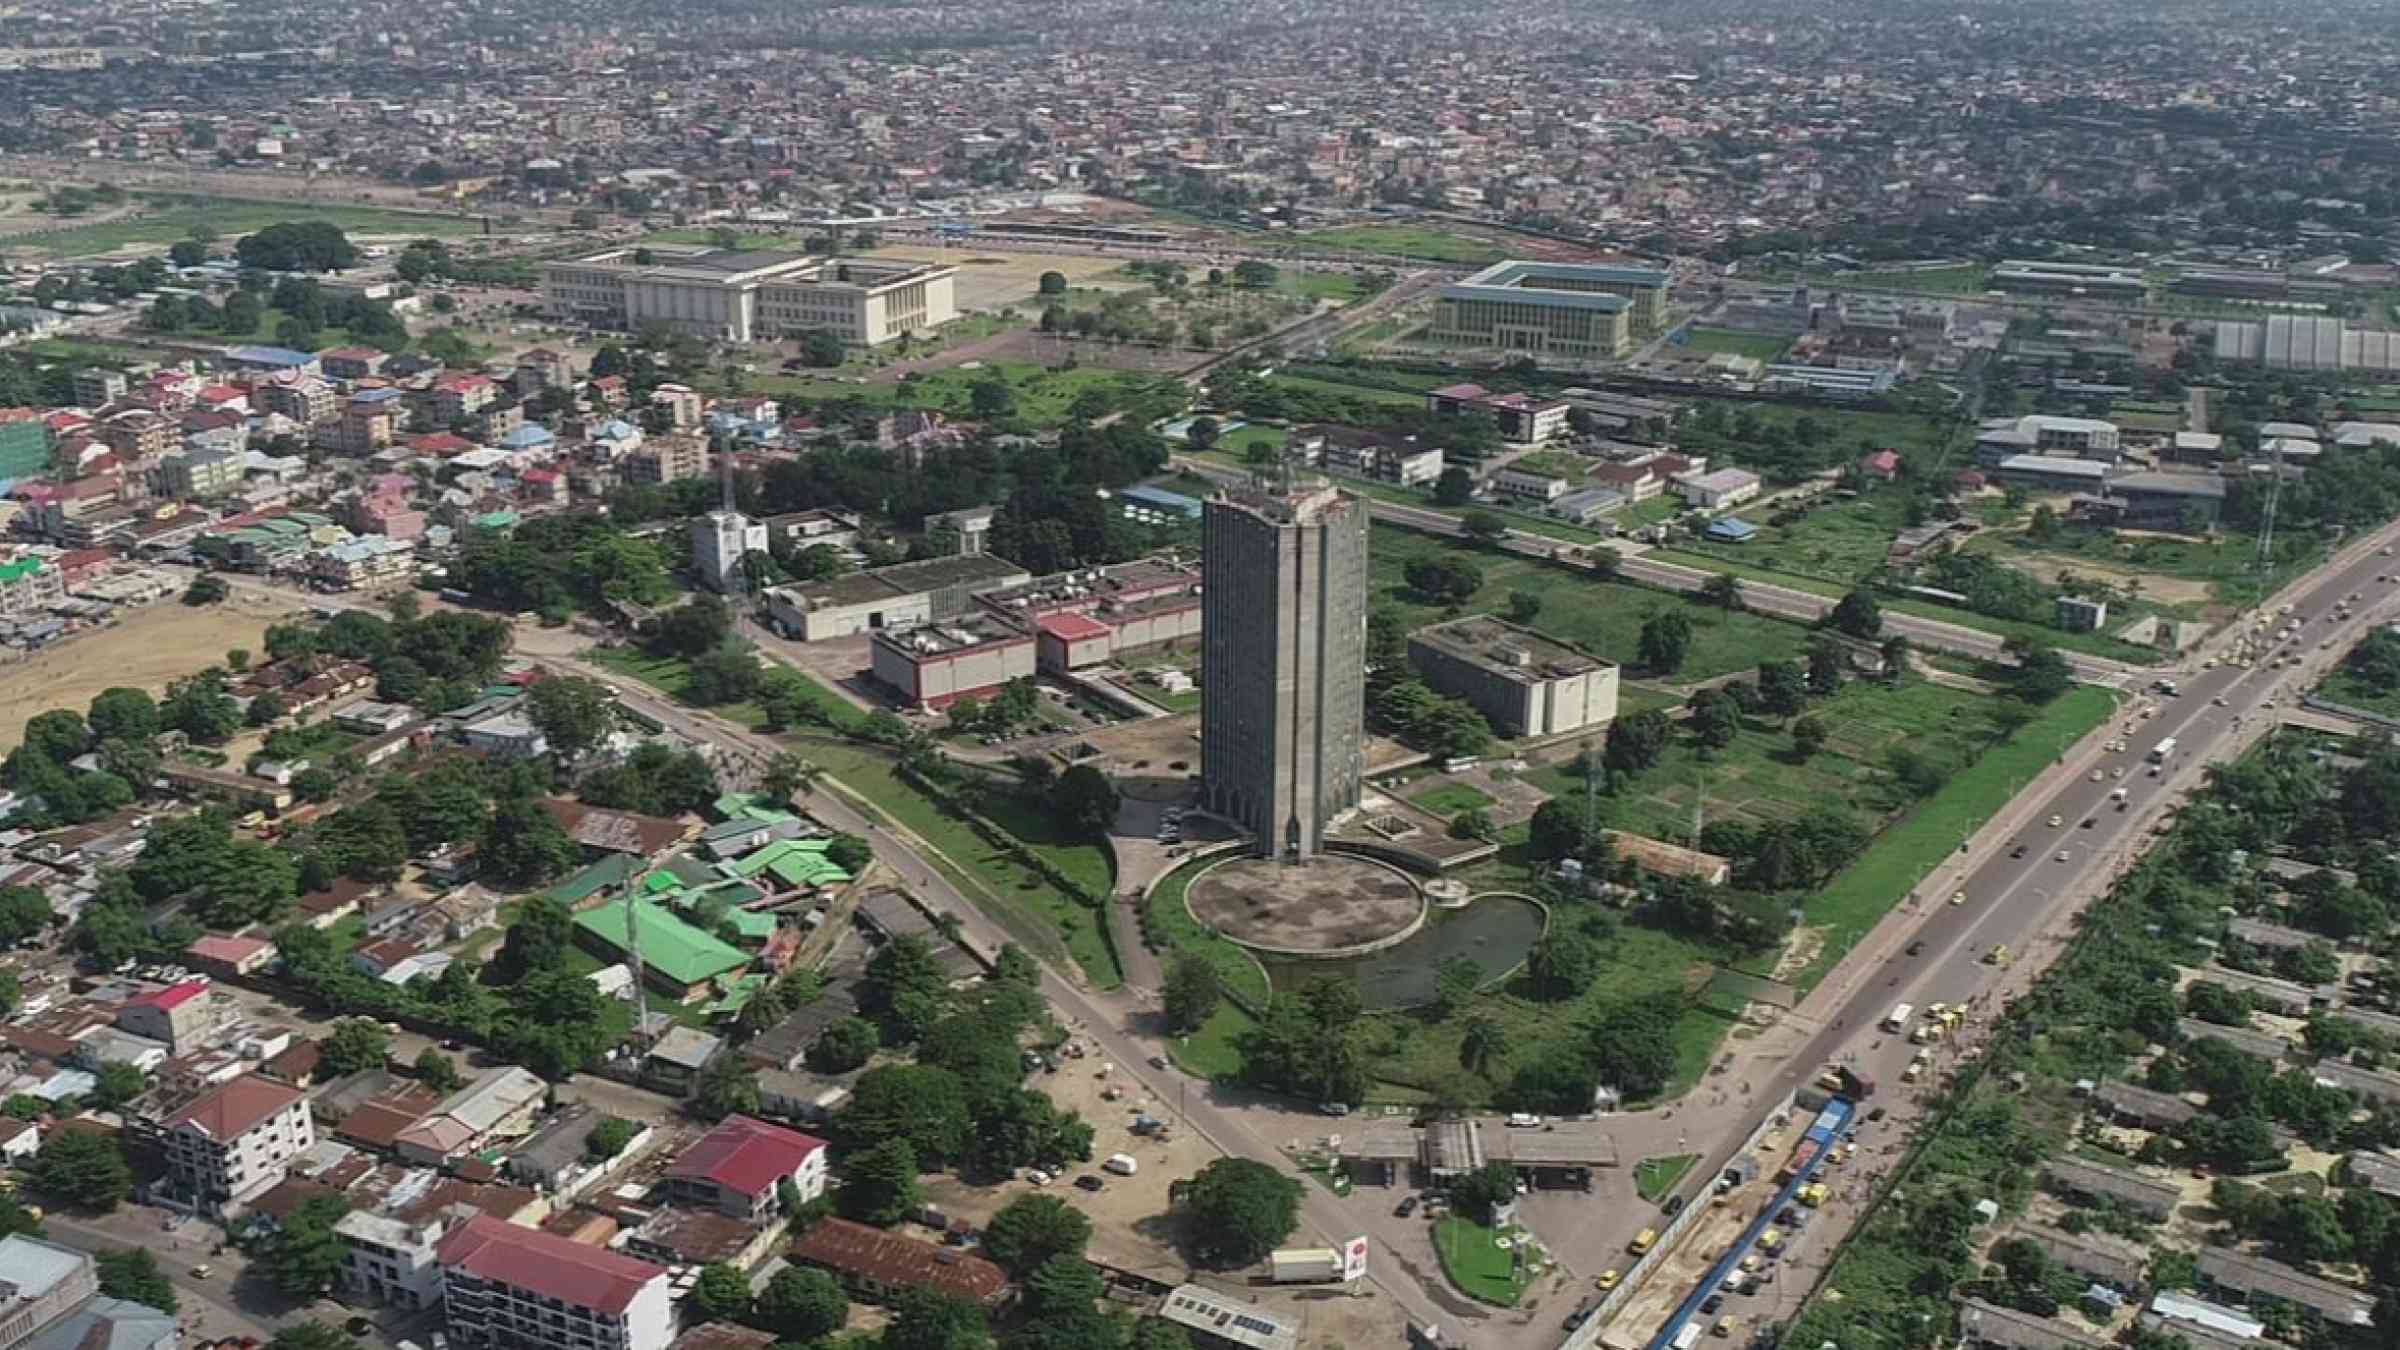 Skyline view of Kinshasa